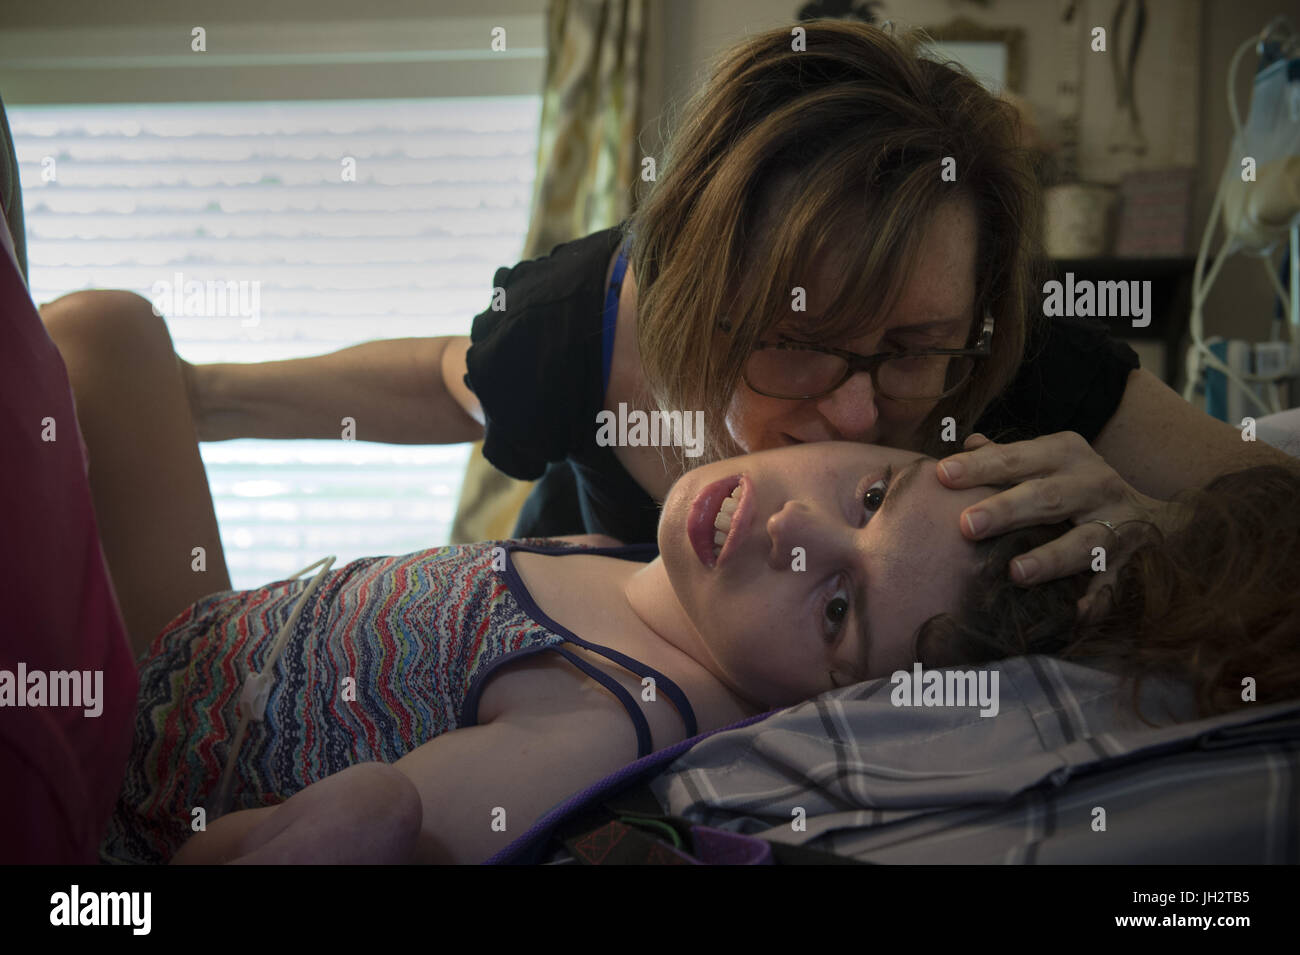 Comer, Géorgie, USA. 5 juillet, 2017. PAM Walley et sa fille CALLIE'S caregiver LORI CAIN font de leur mieux pour stabiliser la jambe de Callie après son fémur cassé pendant qu'on la propose dans son lit. Callie a la paralysie cérébrale et est incapable de parler ou de marcher. À 22 ans, elle est soigné à la maison, avec l'aide des infirmières et d'aides, financées en partie par une renonciation de Medicaid qui aide les familles et les personnes handicapées, survivre et prospérer, dans la communauté plutôt que d'institutions. Crédit : Robin Rayne Nelson/zReportage.com/ZUMA Wire/Alamy Live News Banque D'Images